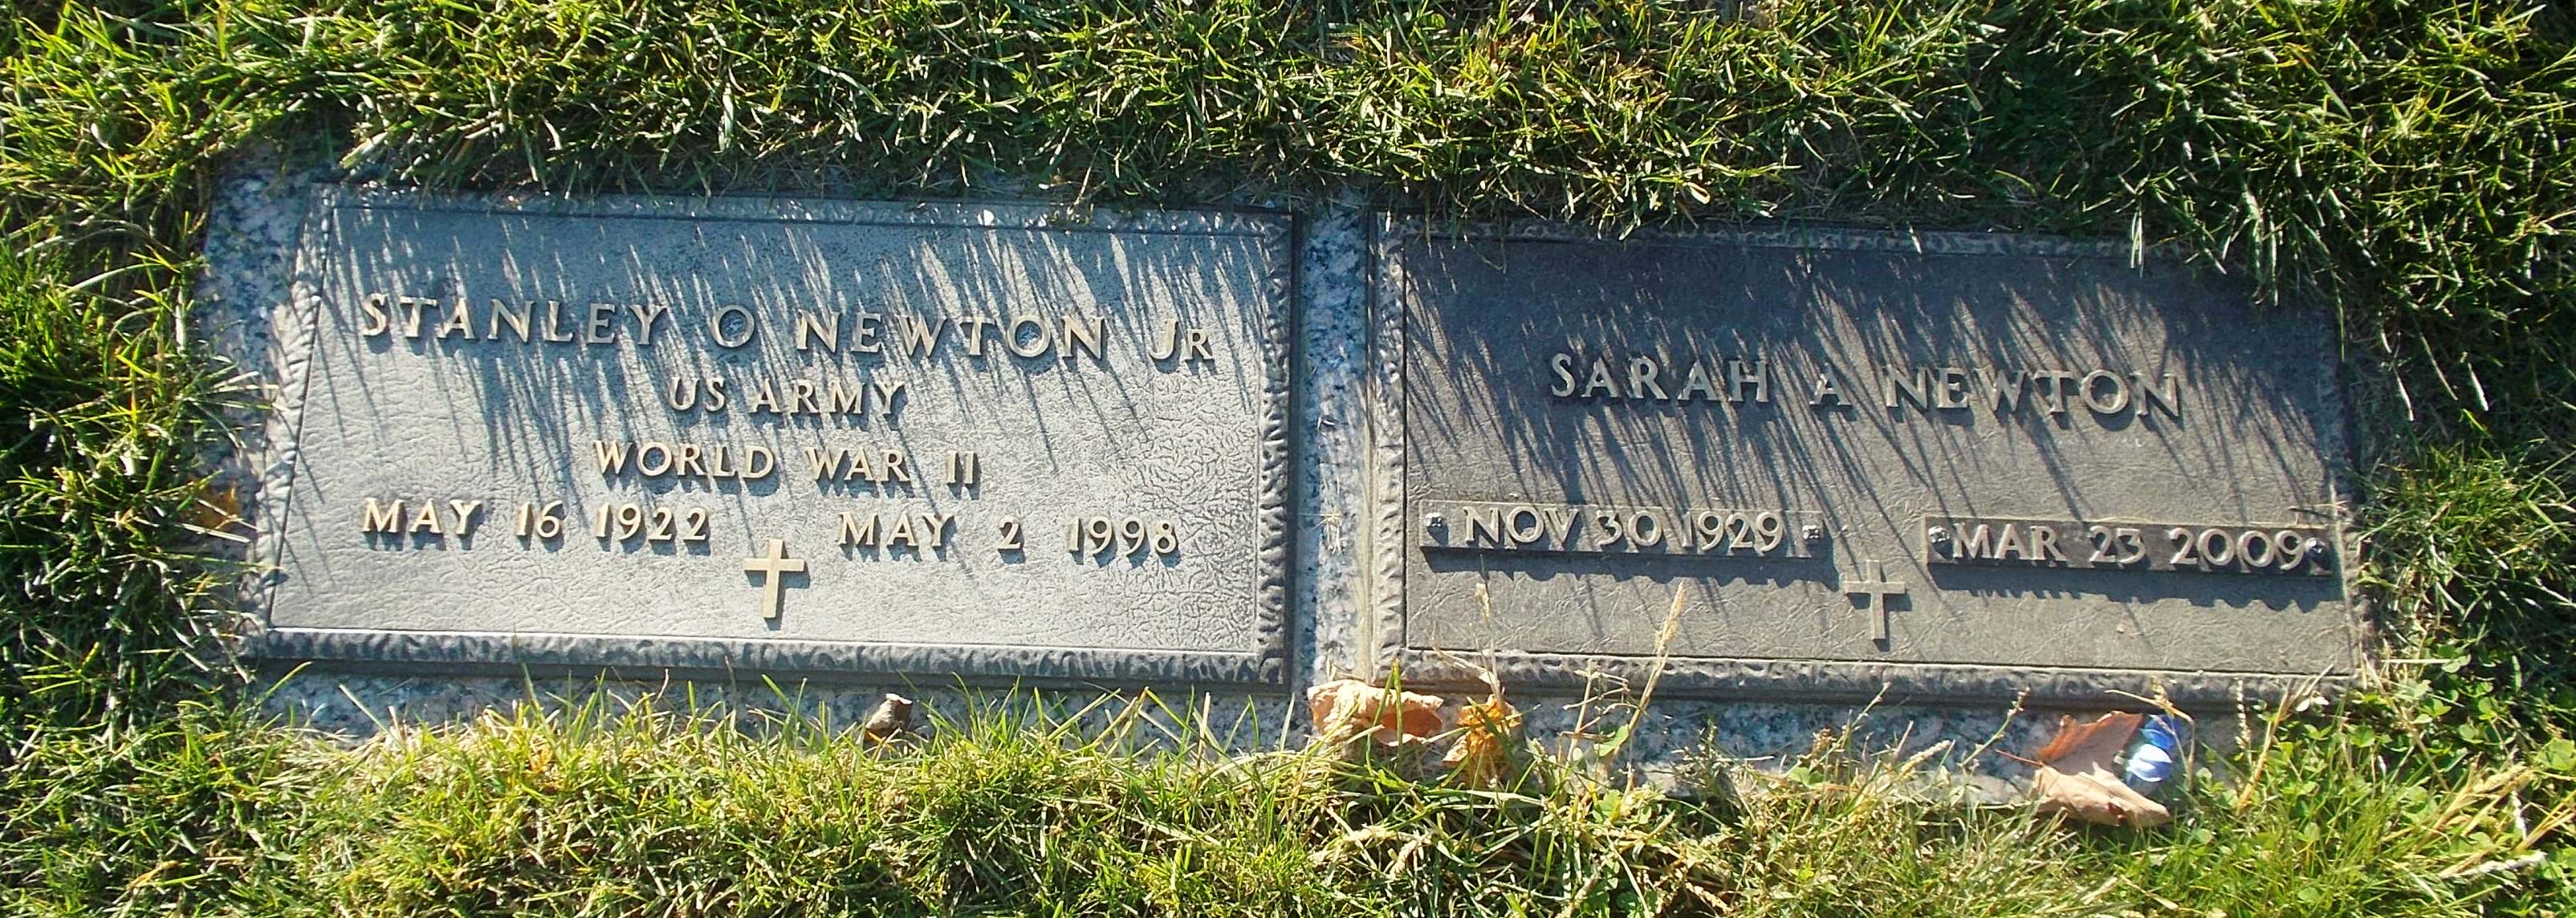 Sarah A Newton